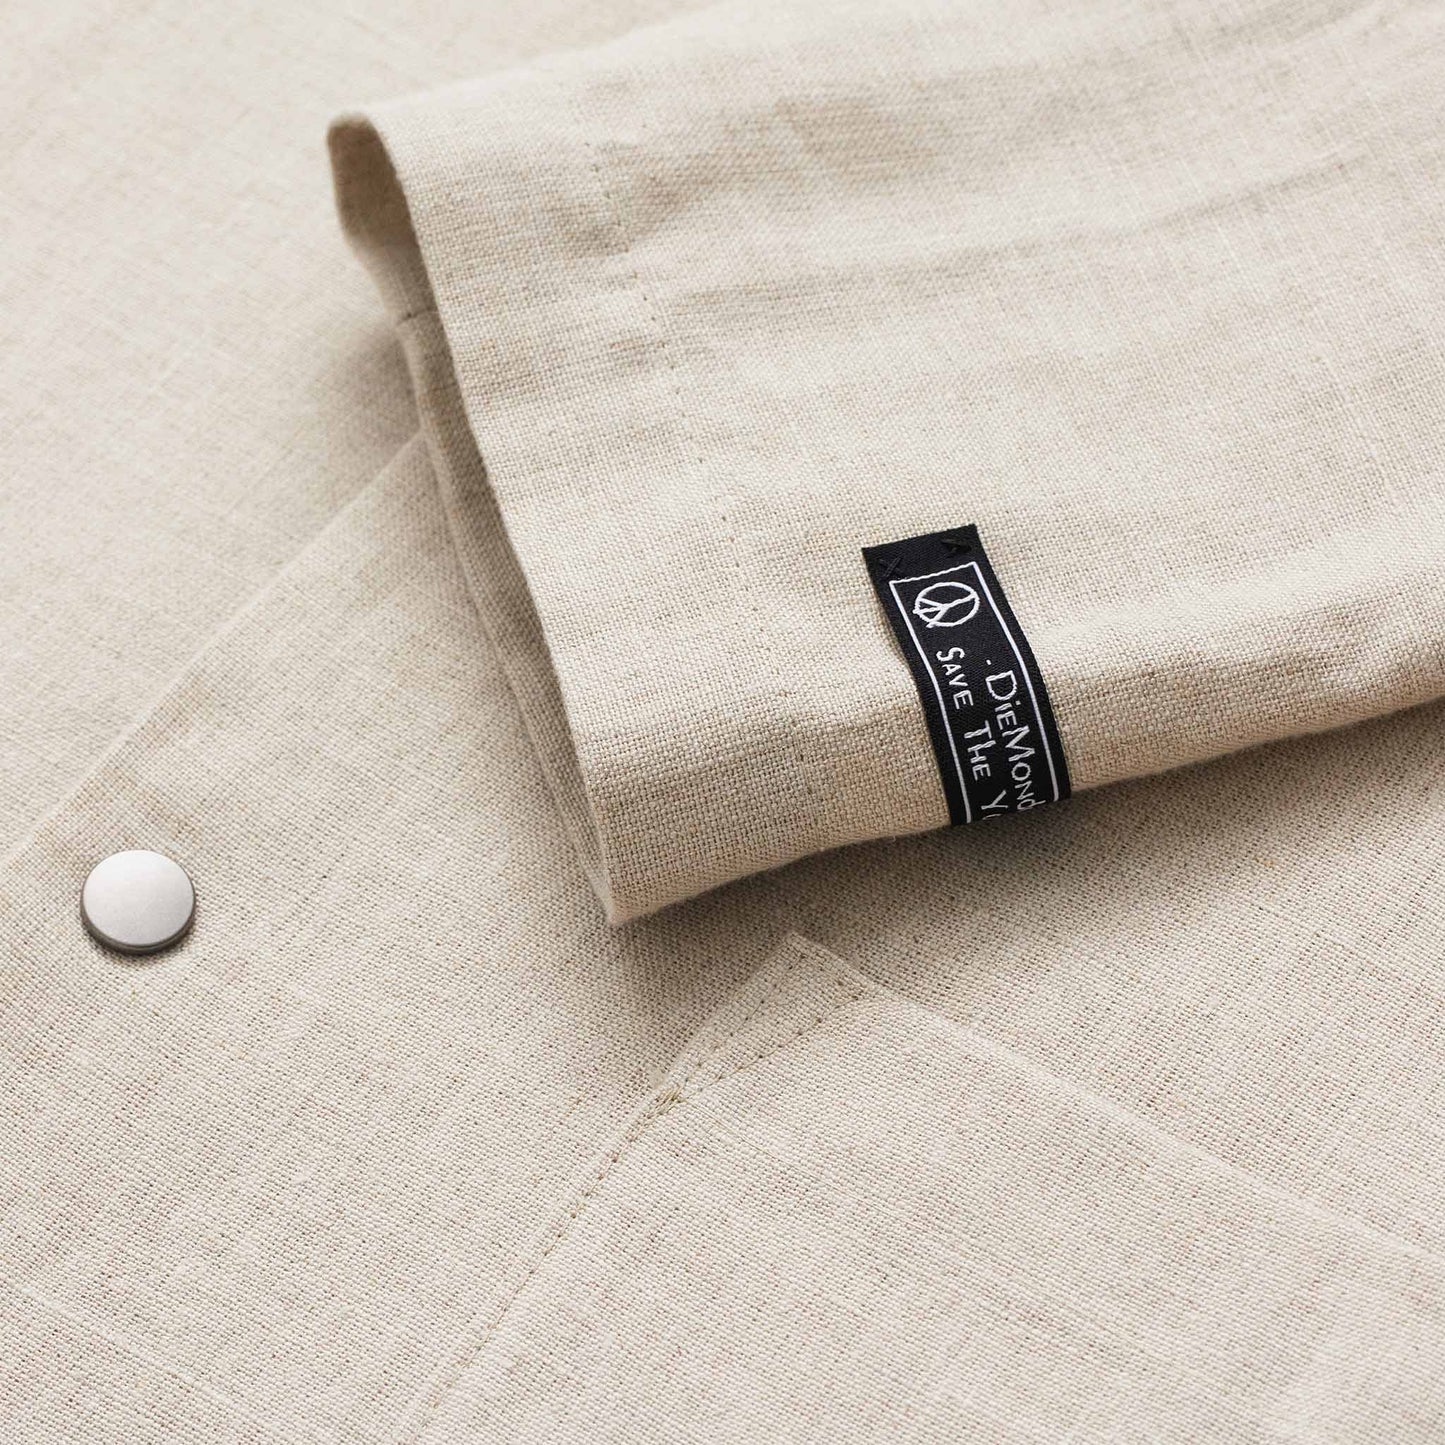 Linen Overshirt Jacket, Biege